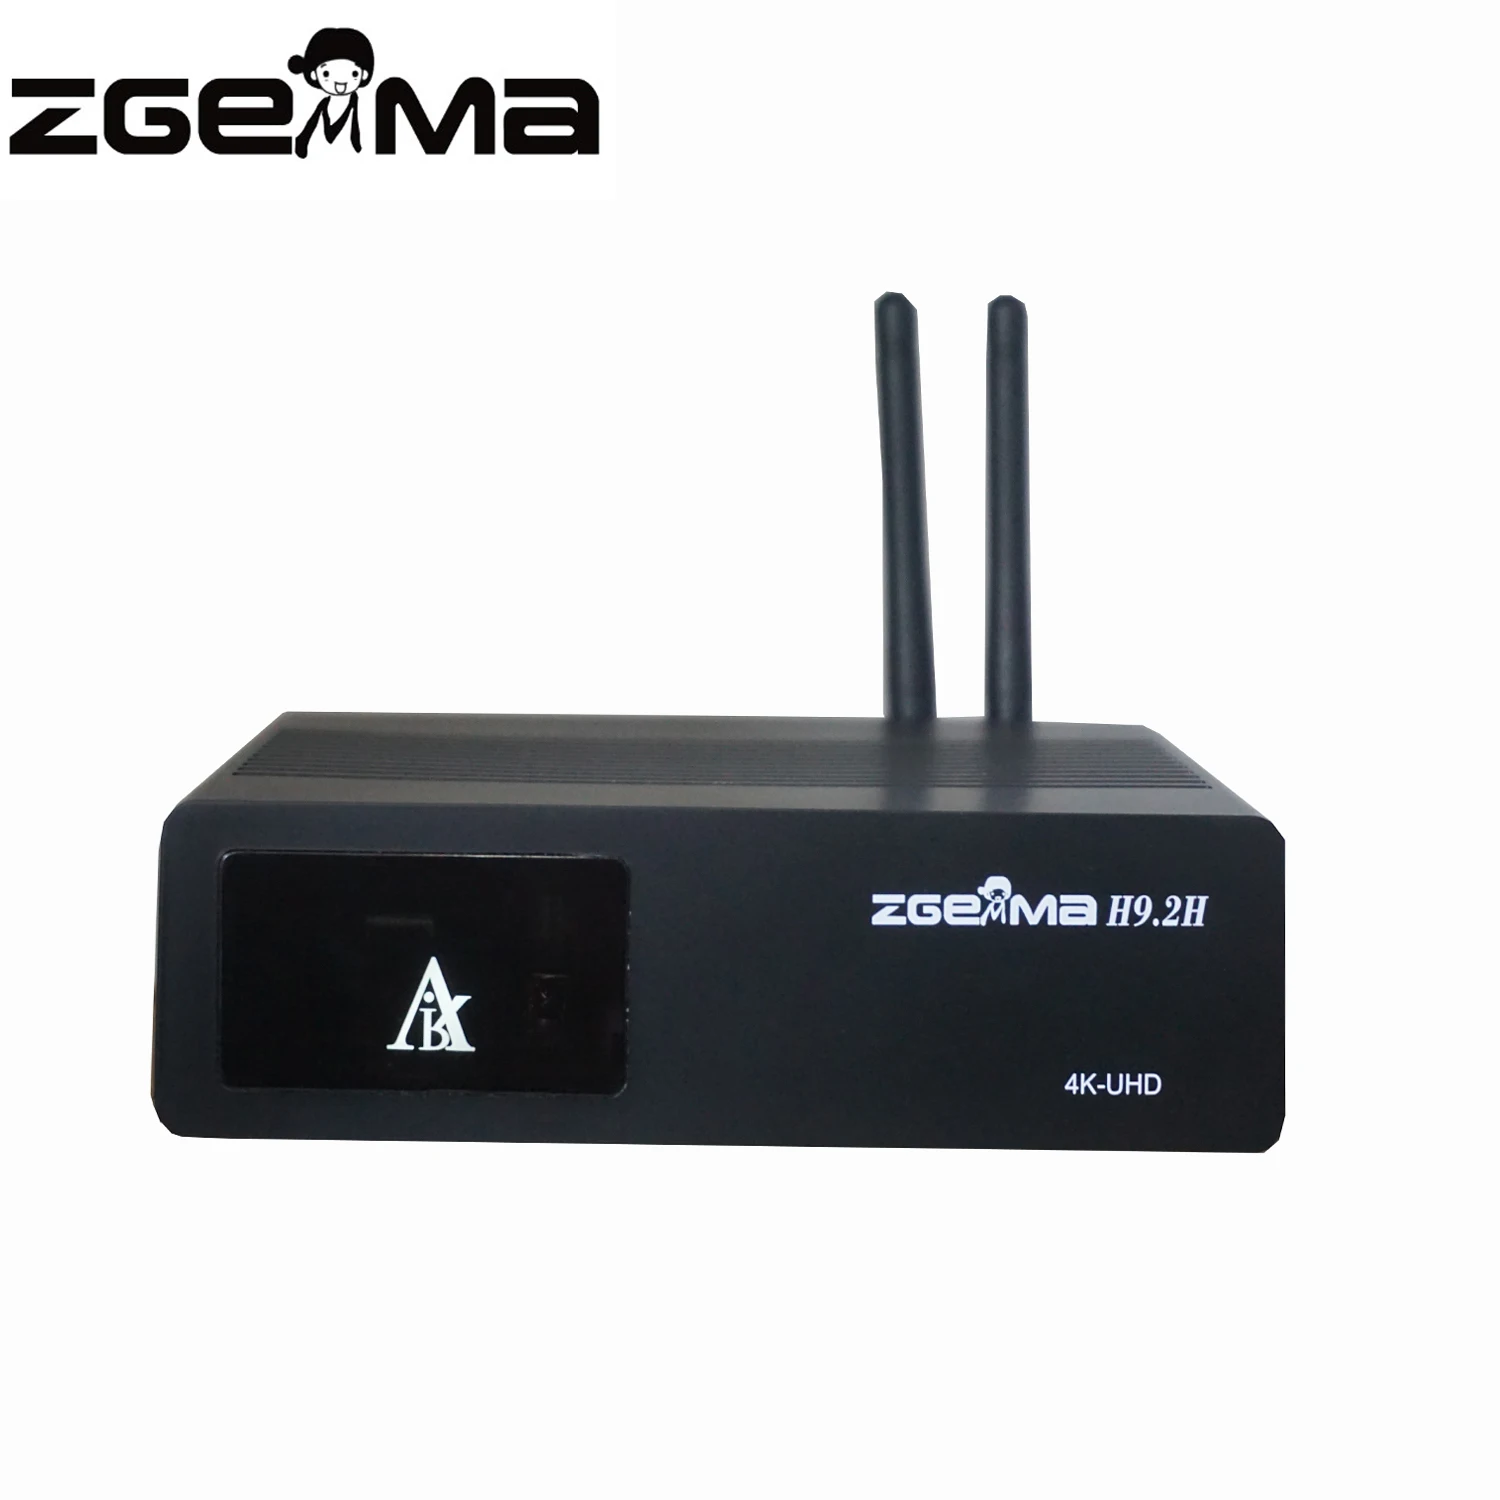 Linux Enigma2 4K UHD Zgemma H9.2H combo DVB-S2X+DVB-T2/C Satellite TV Receiver T2-MI KODI CCCAM